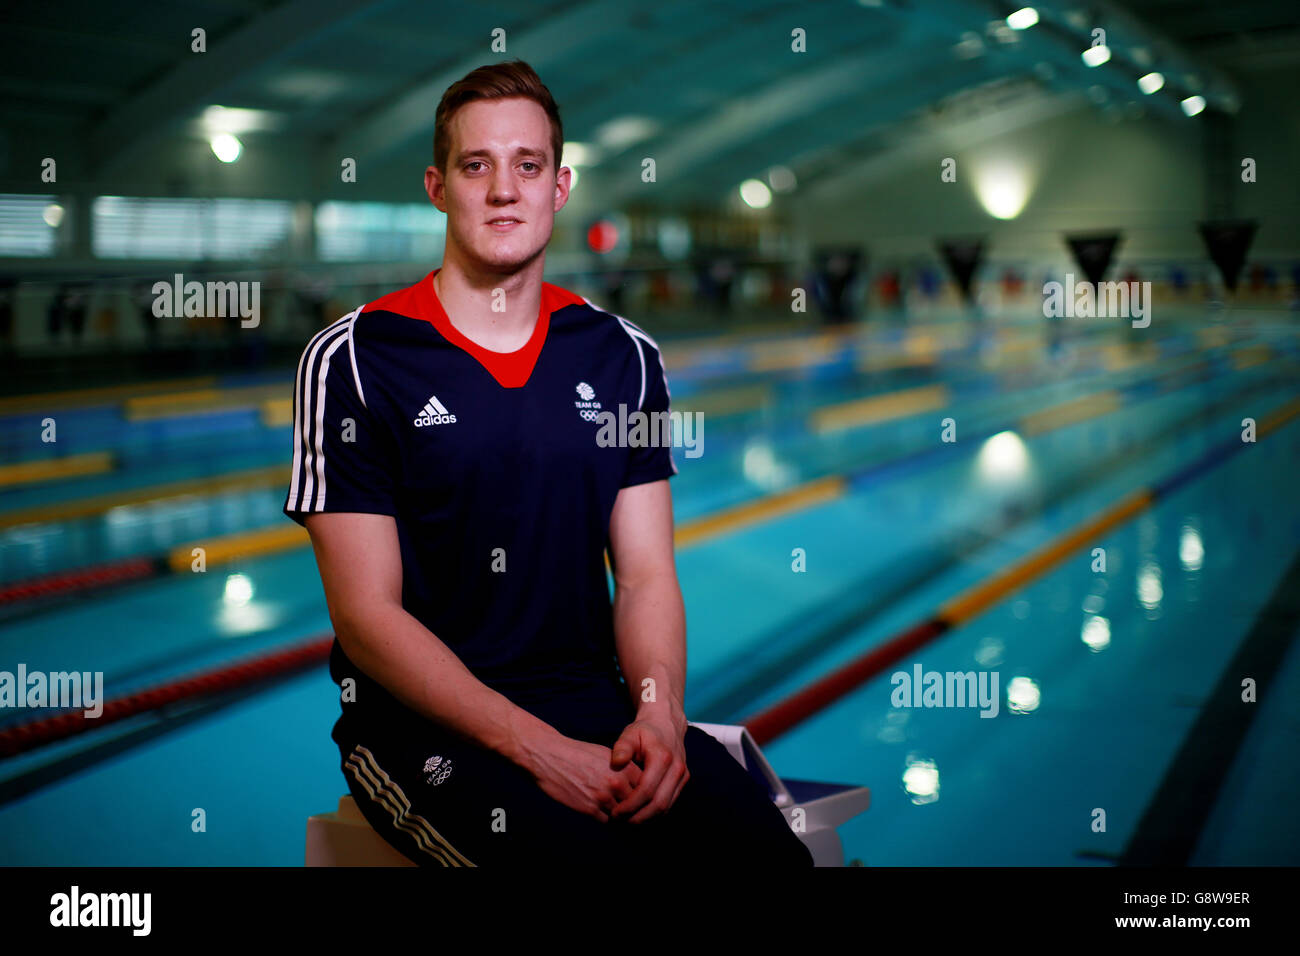 Andrew Willis durante l'annuncio degli atleti del Team GB per i Giochi Olimpici di Rio 2016 presso la piscina dell'Università di Bath. Data foto: Giovedì 21 aprile 2016. Il credito fotografico deve essere: David Davies/PA Wire Foto Stock